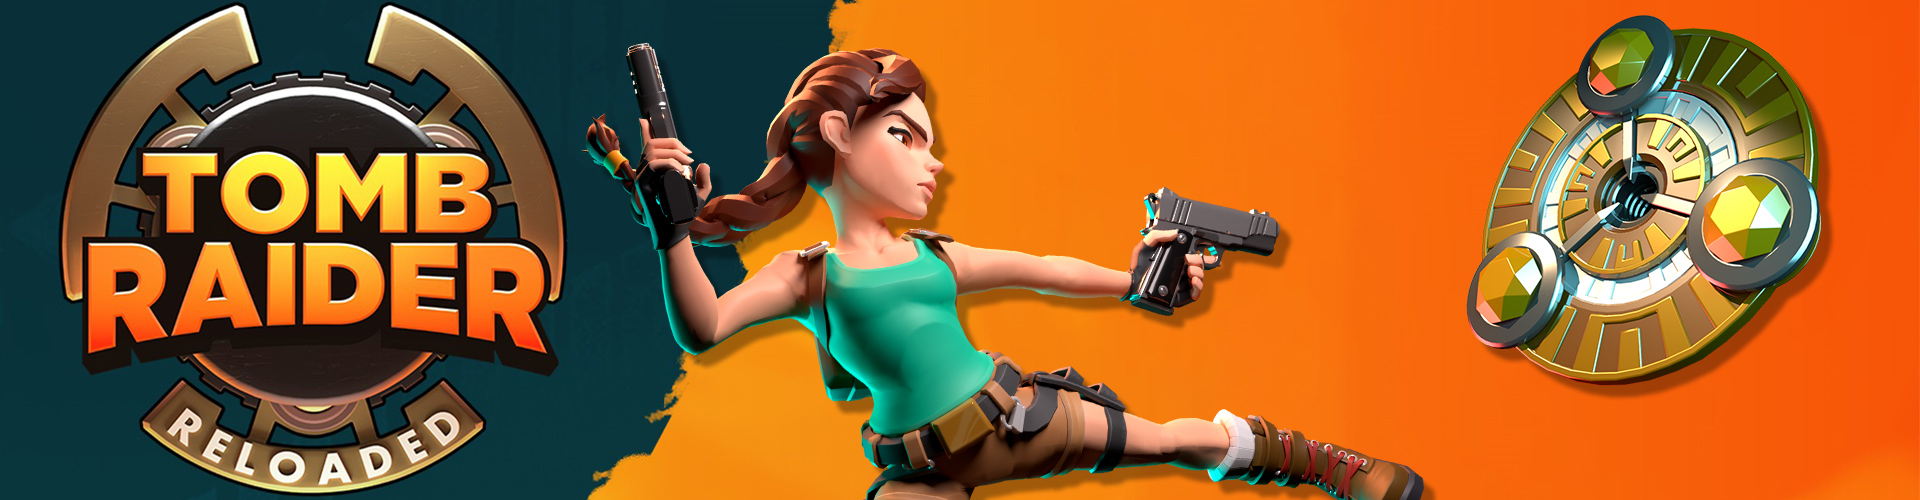 Galería actualizada de Tomb Raider Reloaded